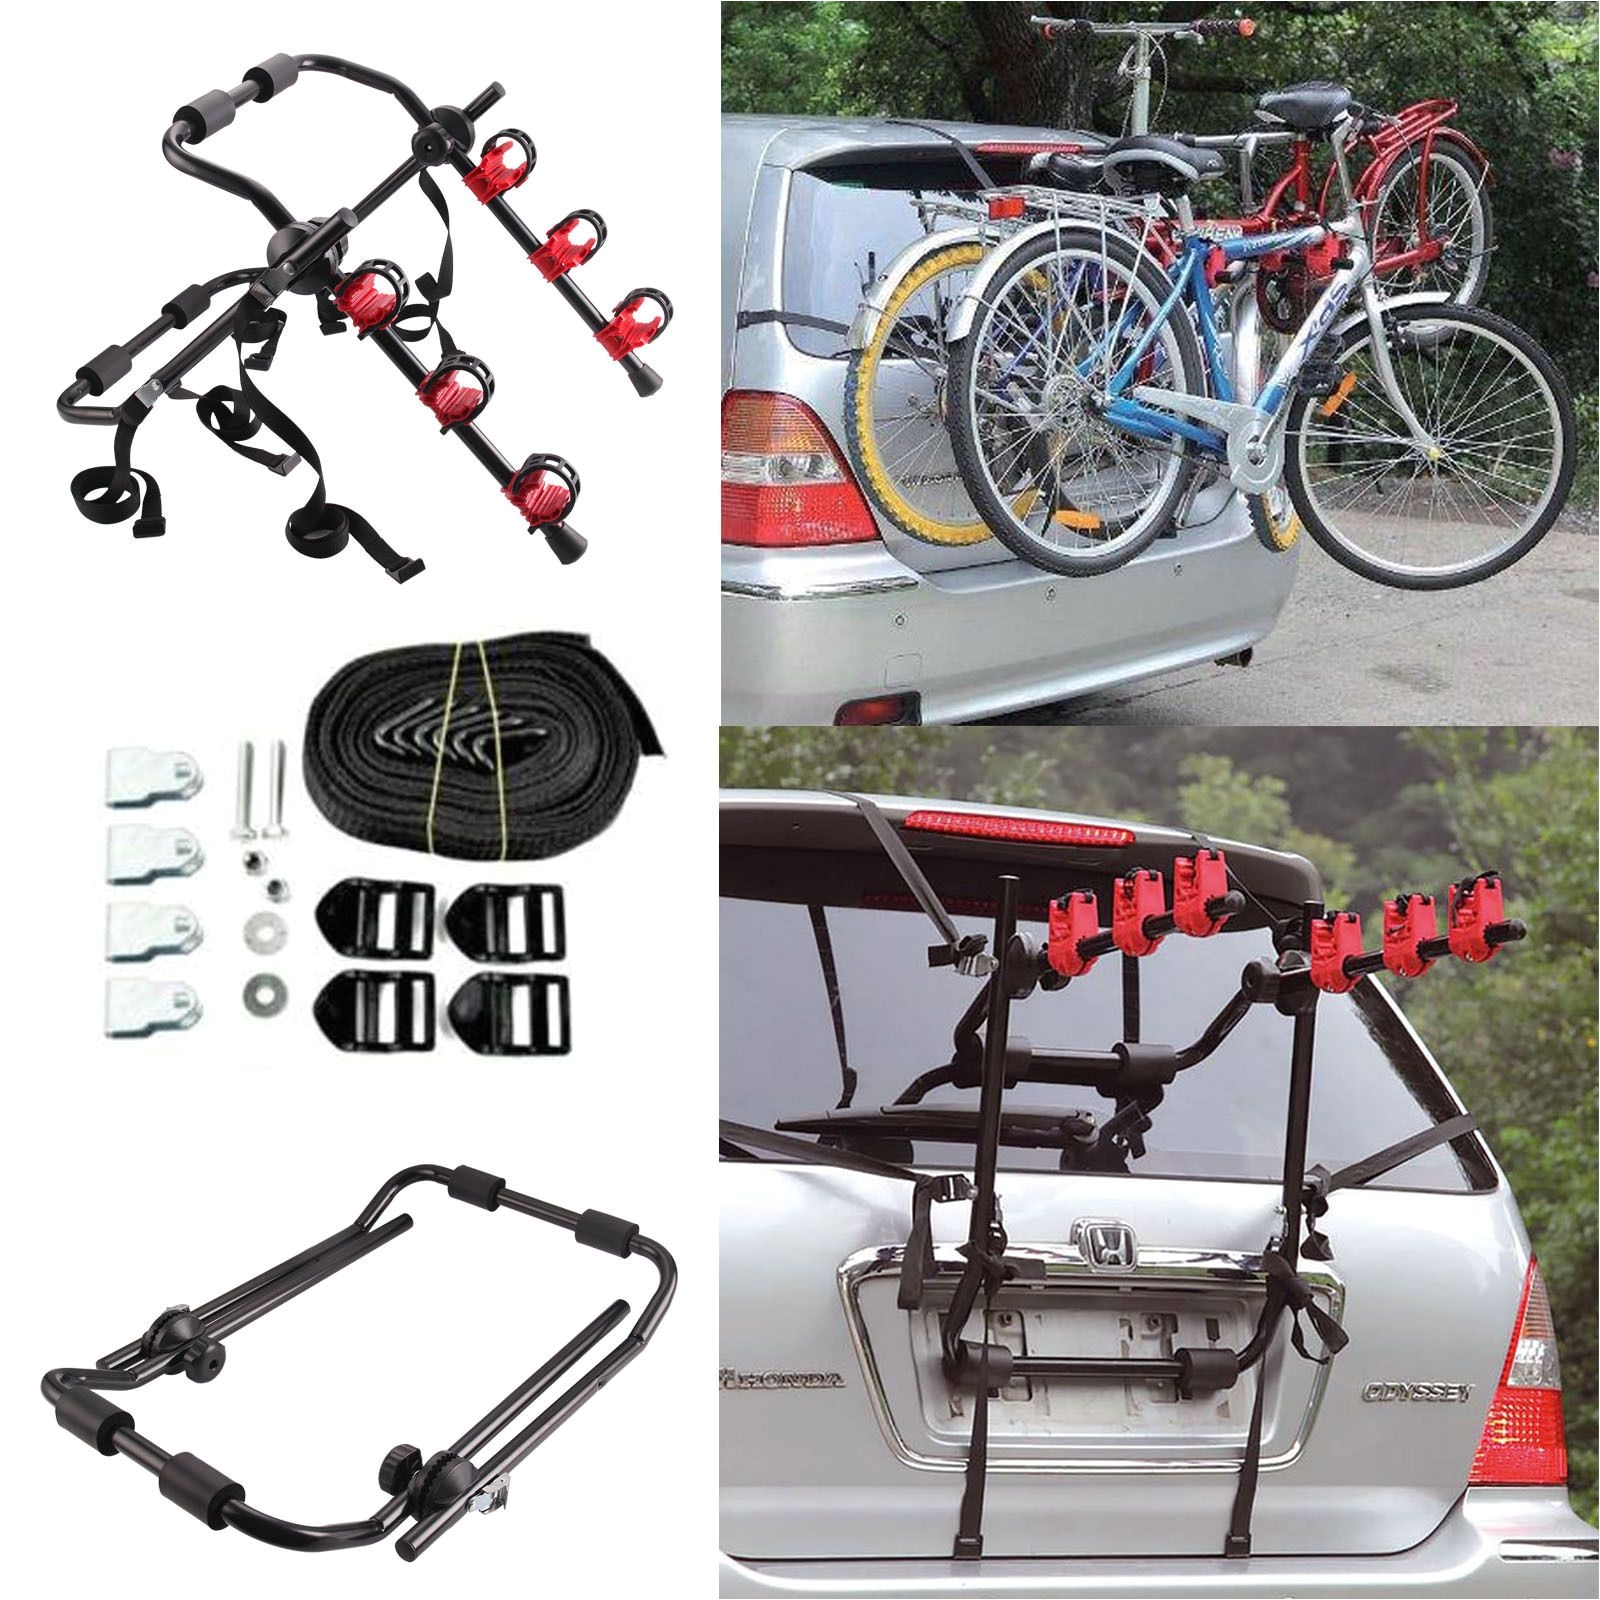 Bicycle Rear Rack Genuine Bmw Cycle Carrier for Roof Rack 82720137716 Oem Bike